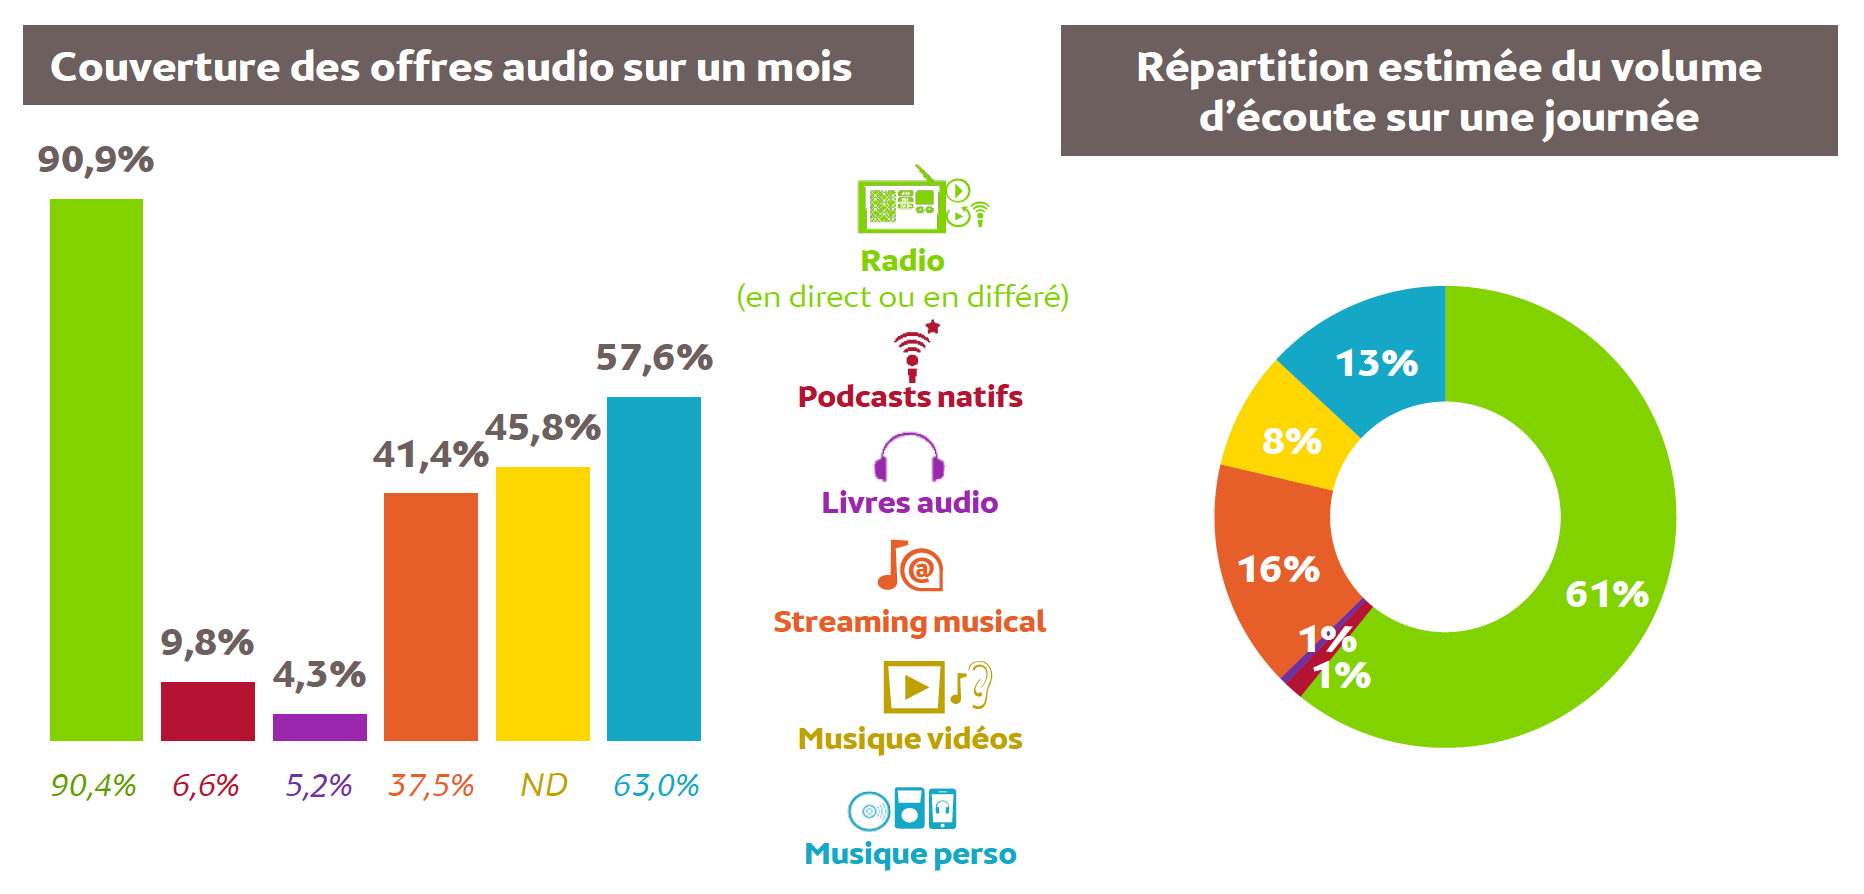 Source : Médiamétrie - Global Audio - avril 2020 - Copyright Médiamétrie - Tous droits réservés